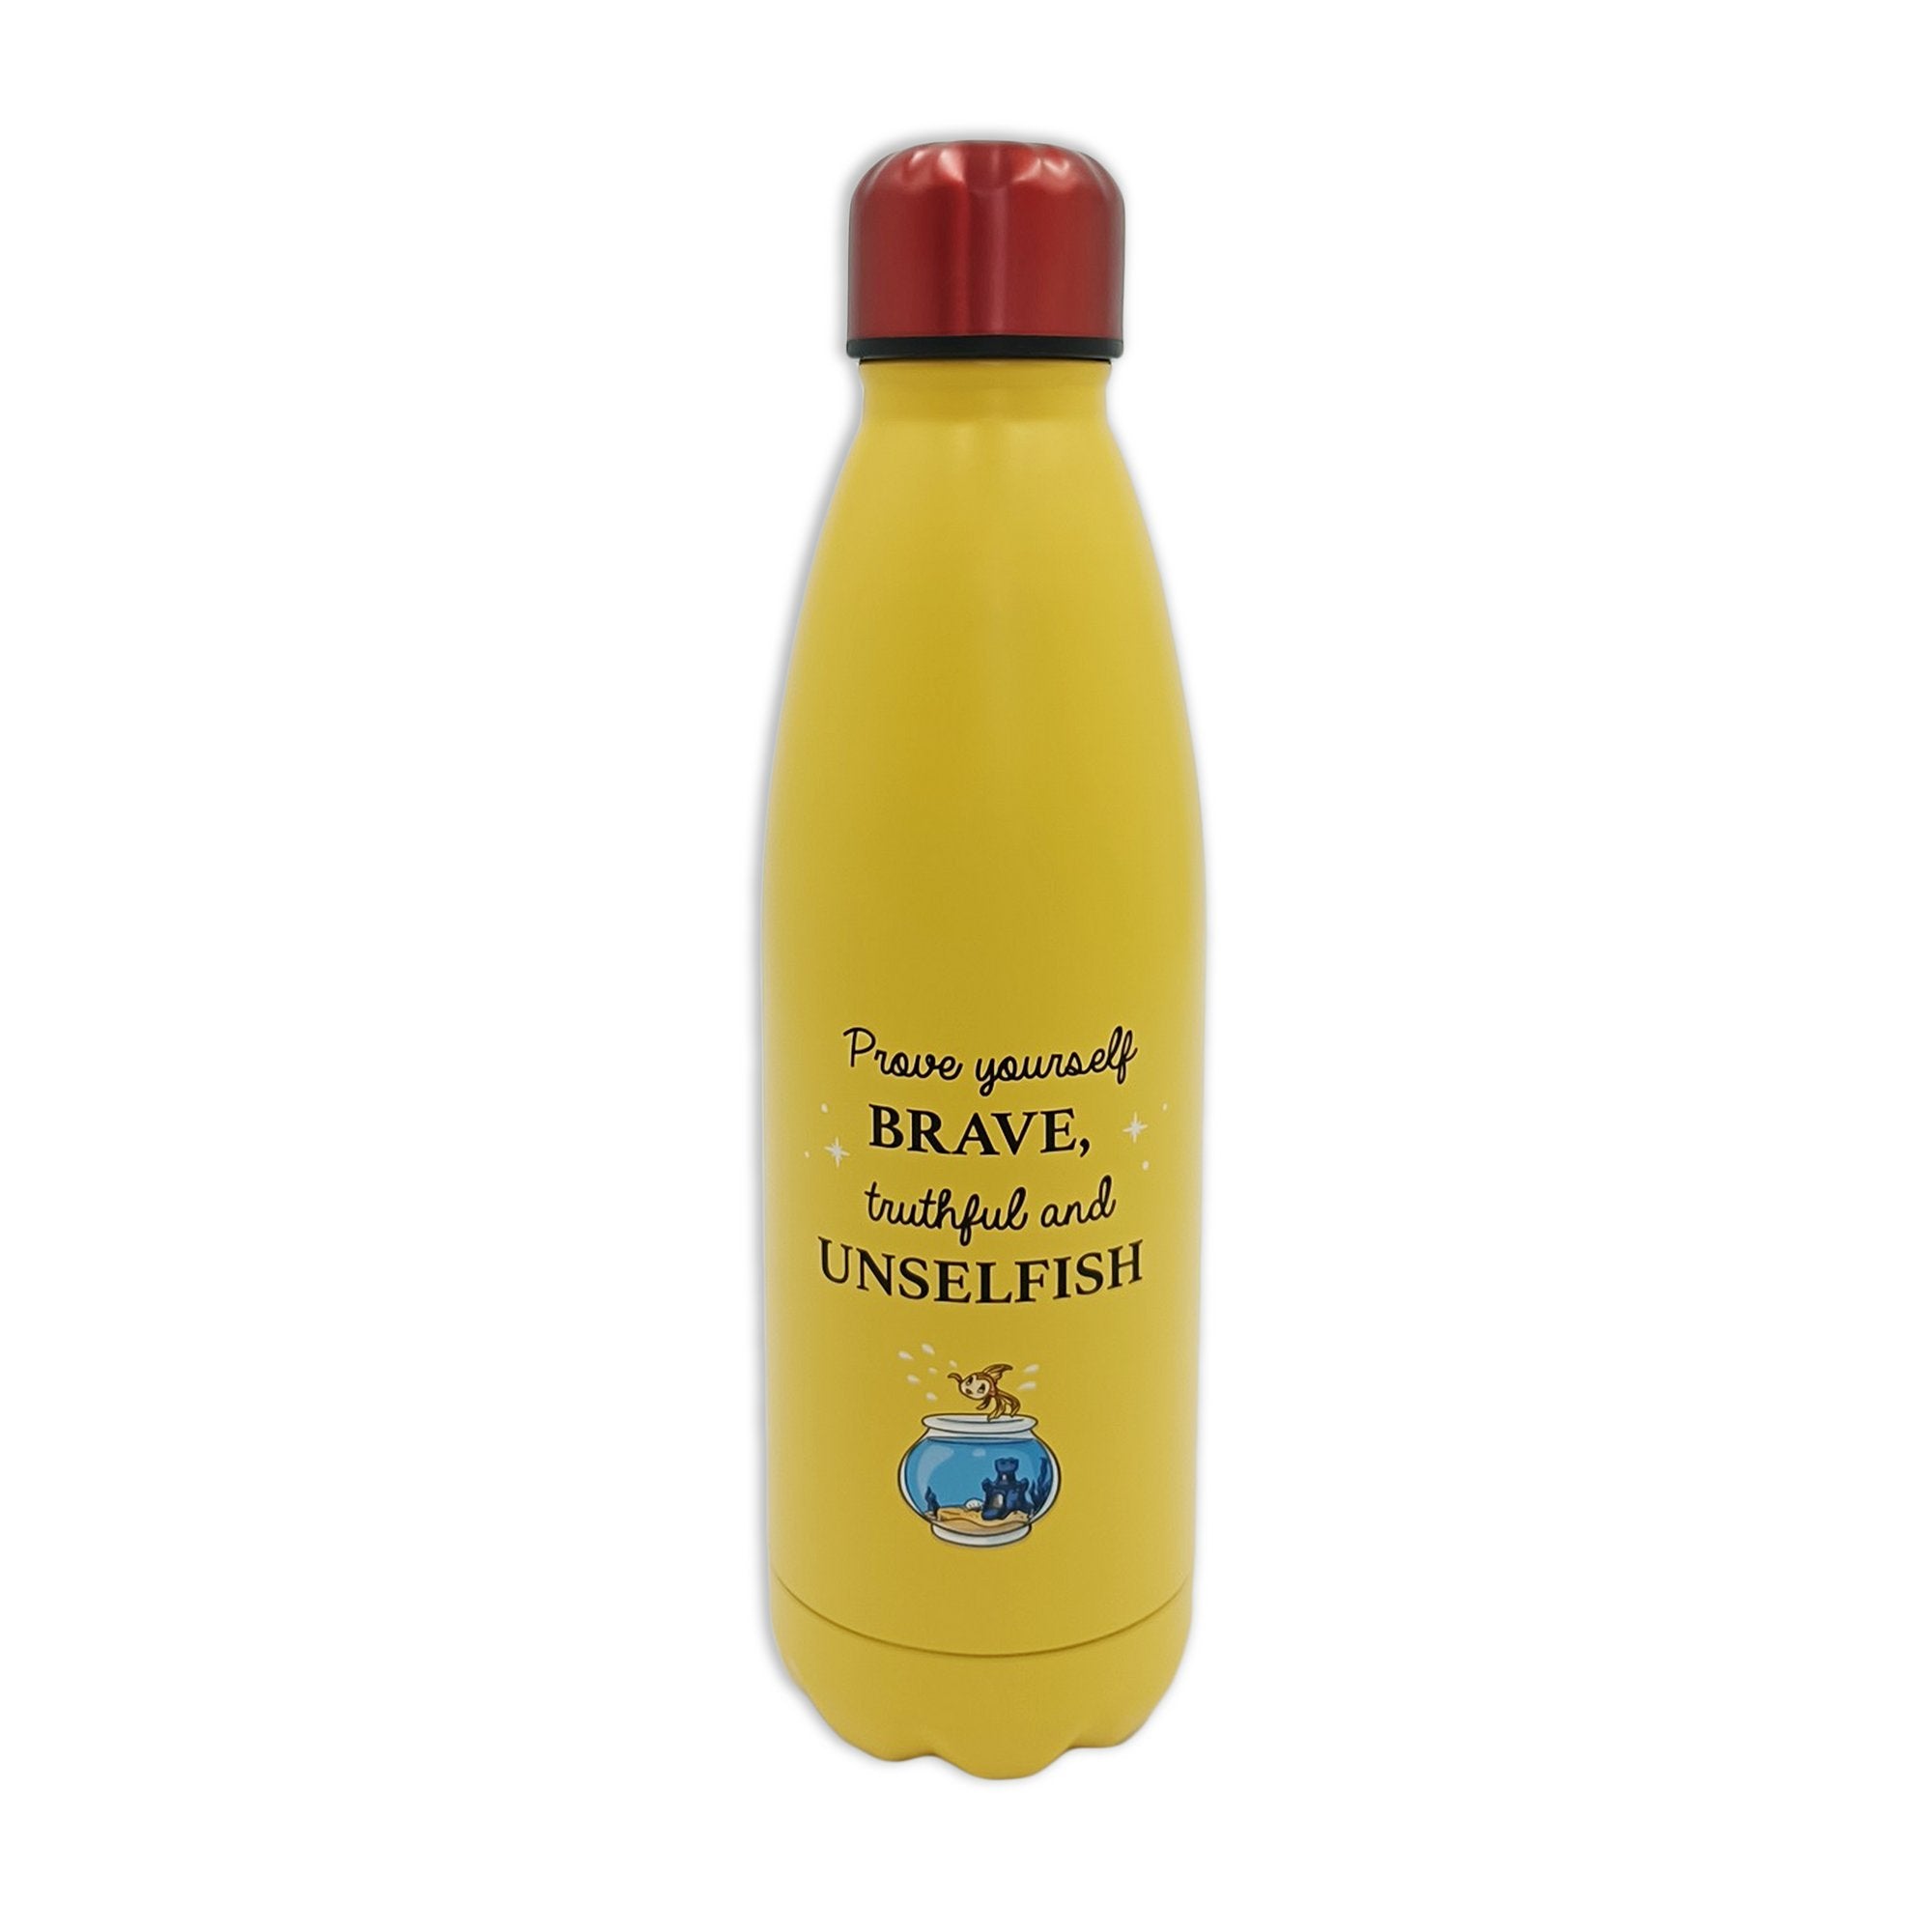 Pinocchio Water Bottle (Metal) 500ml - Disney